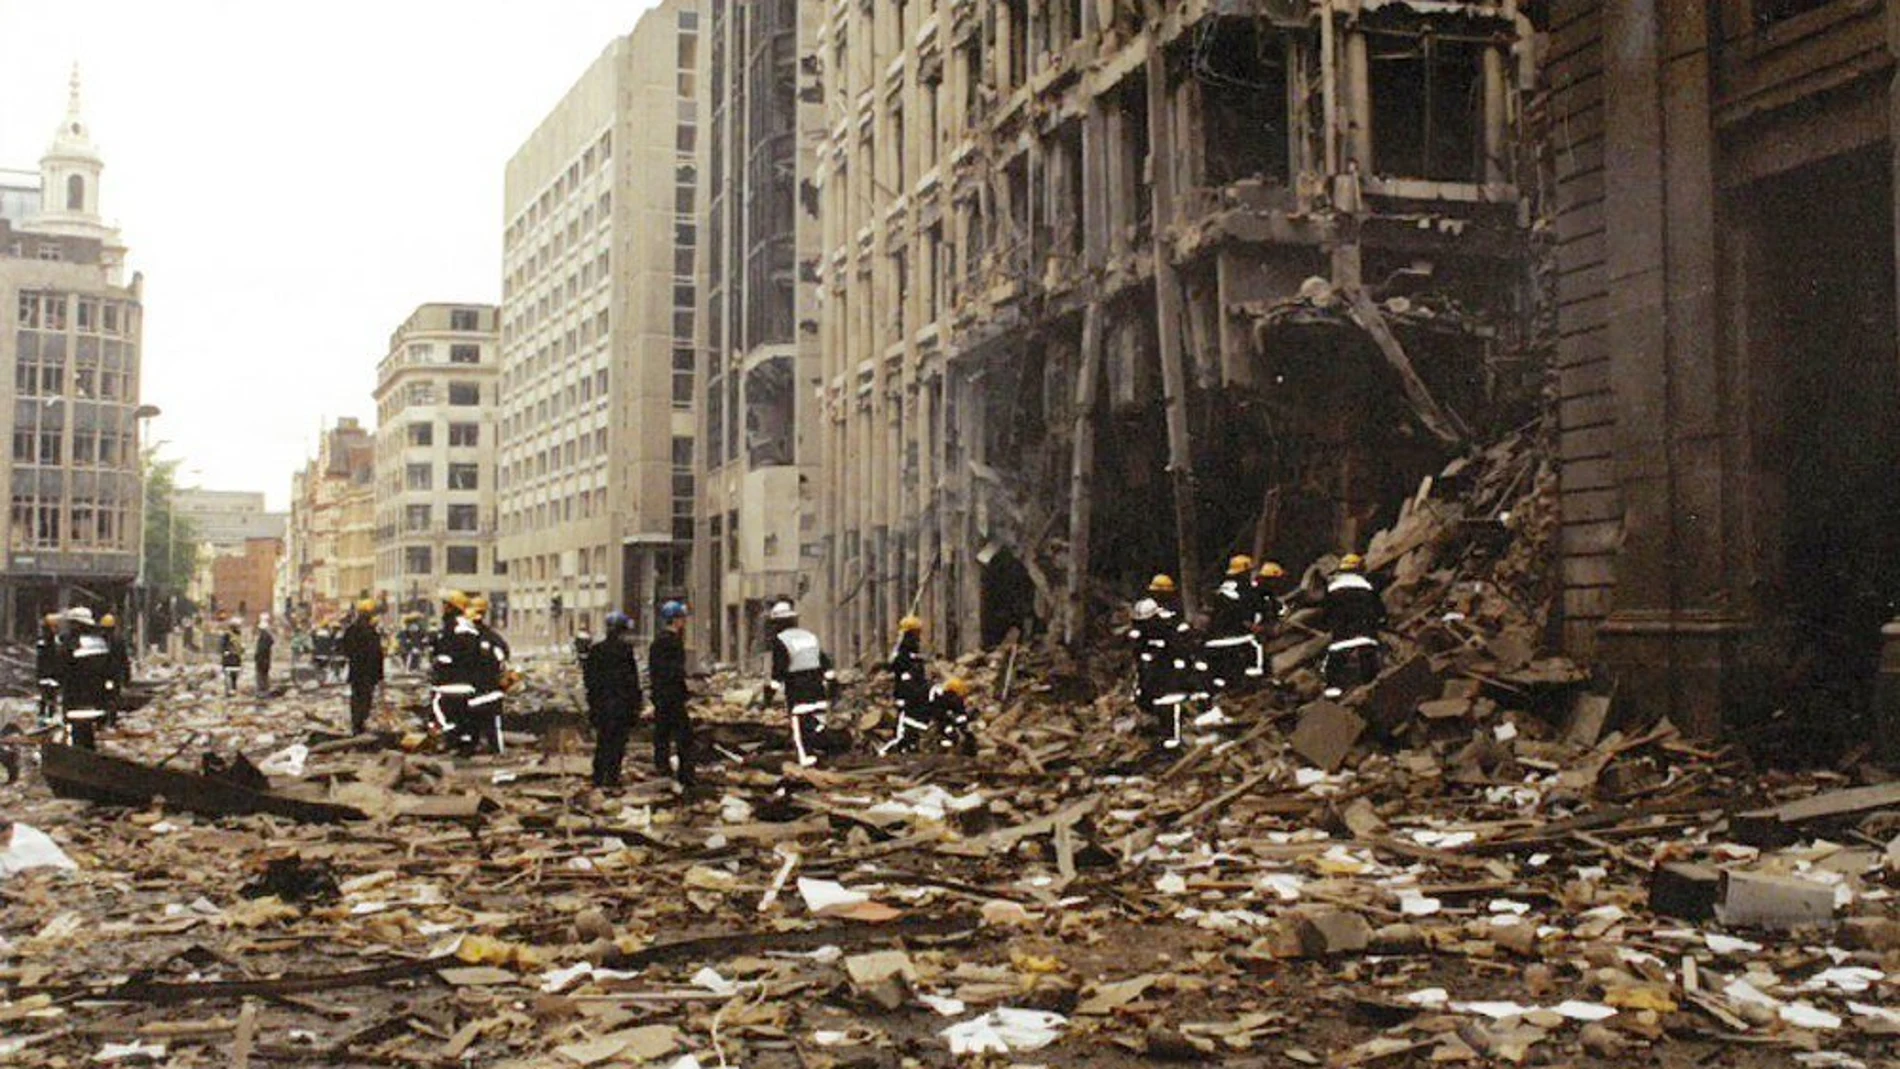 Imágen de archivo cedida por la City of London Police que muestra los daños tras la detonación de una bomba de la Armada del IRA Provisional, en las inmediaciones de la calle 99 Bishopsgate con Wormwood Street, en Londres (Reino Unido) el 24 de abril de 1993